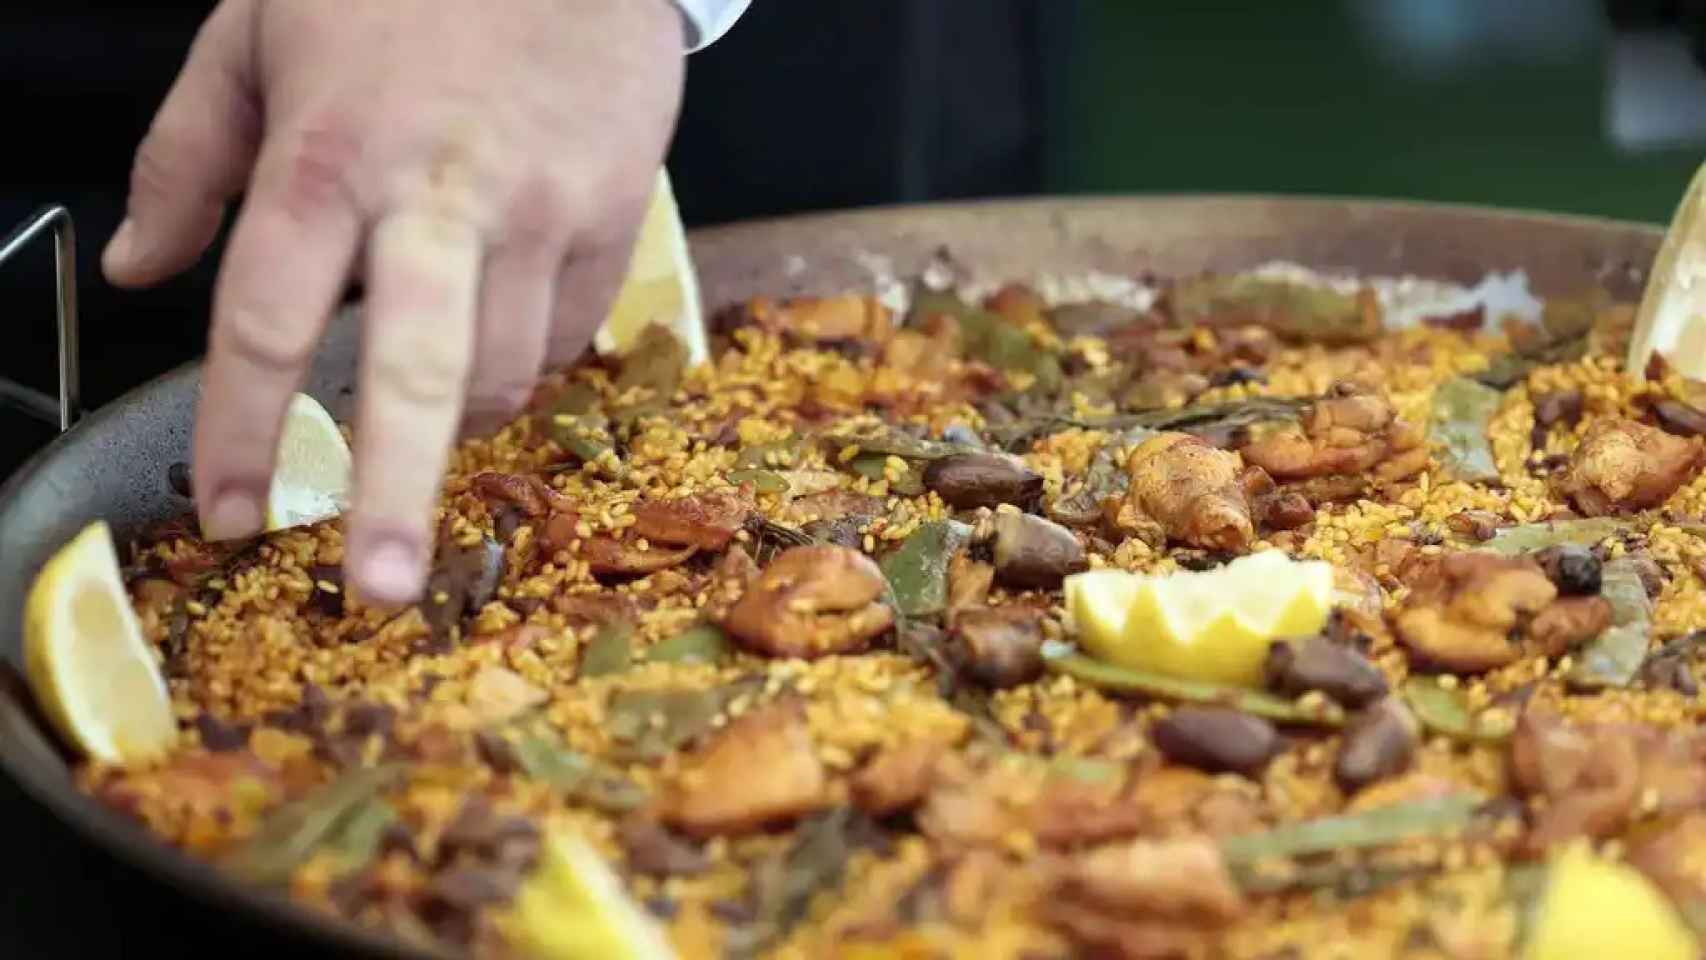 Esta es la paella del restaurante Cachitos de Elche, cuya jefa de Cocina Noelia Pascual ha ganado el el certamen gastronómico internacional World Paella Day Cup 2021.